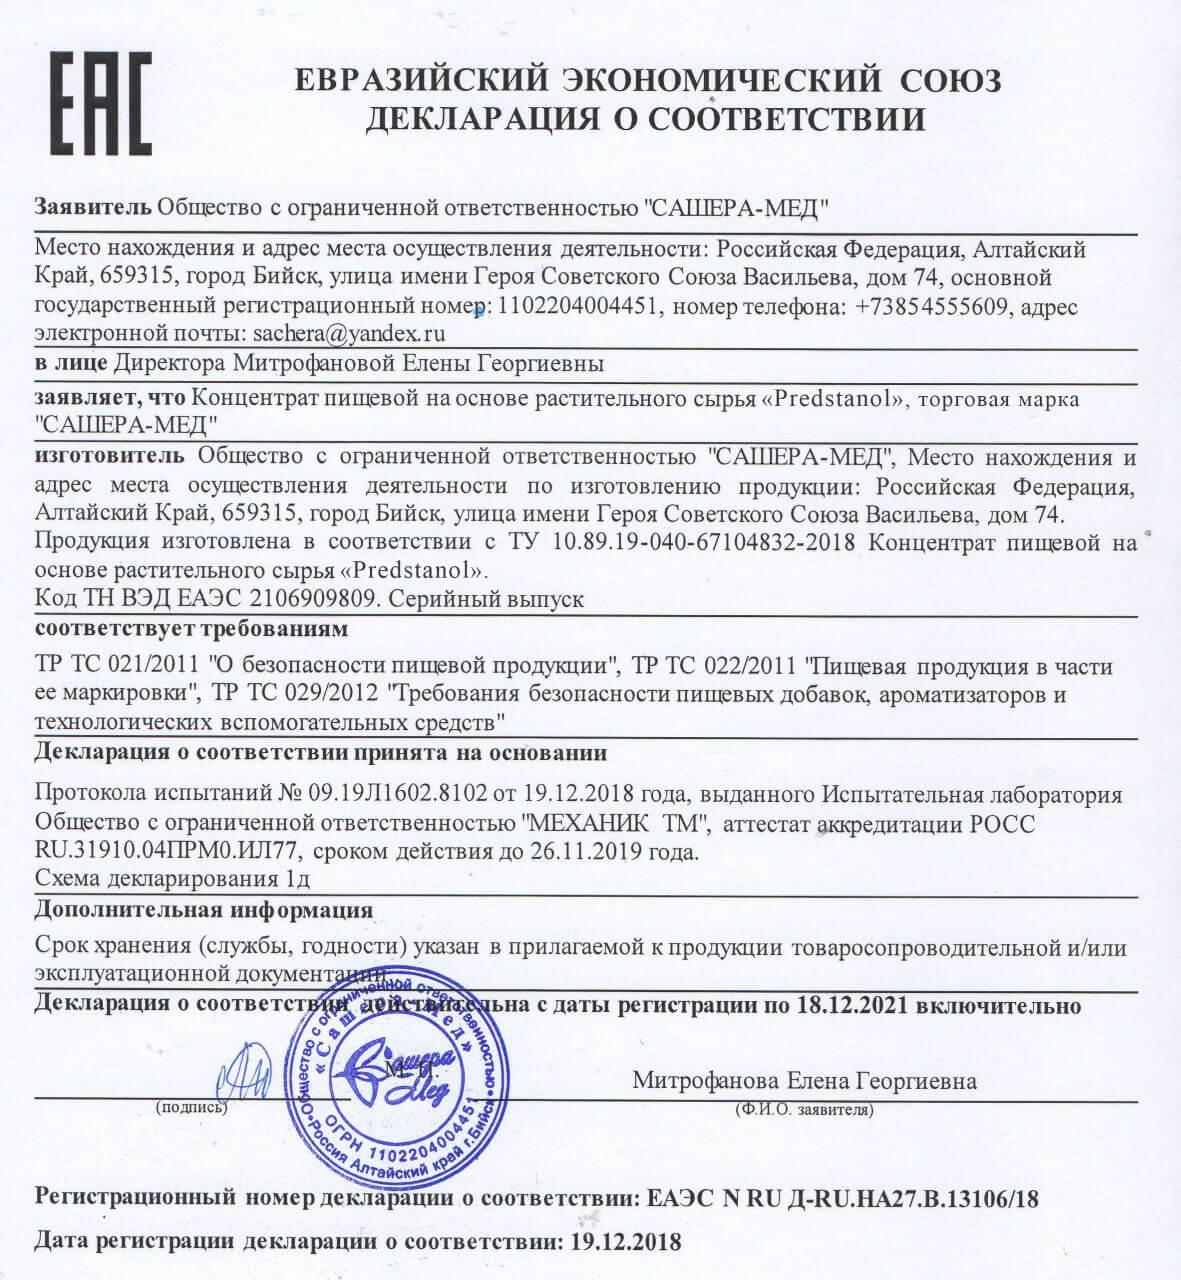 Сертификат на предстанол в Магнитогорске